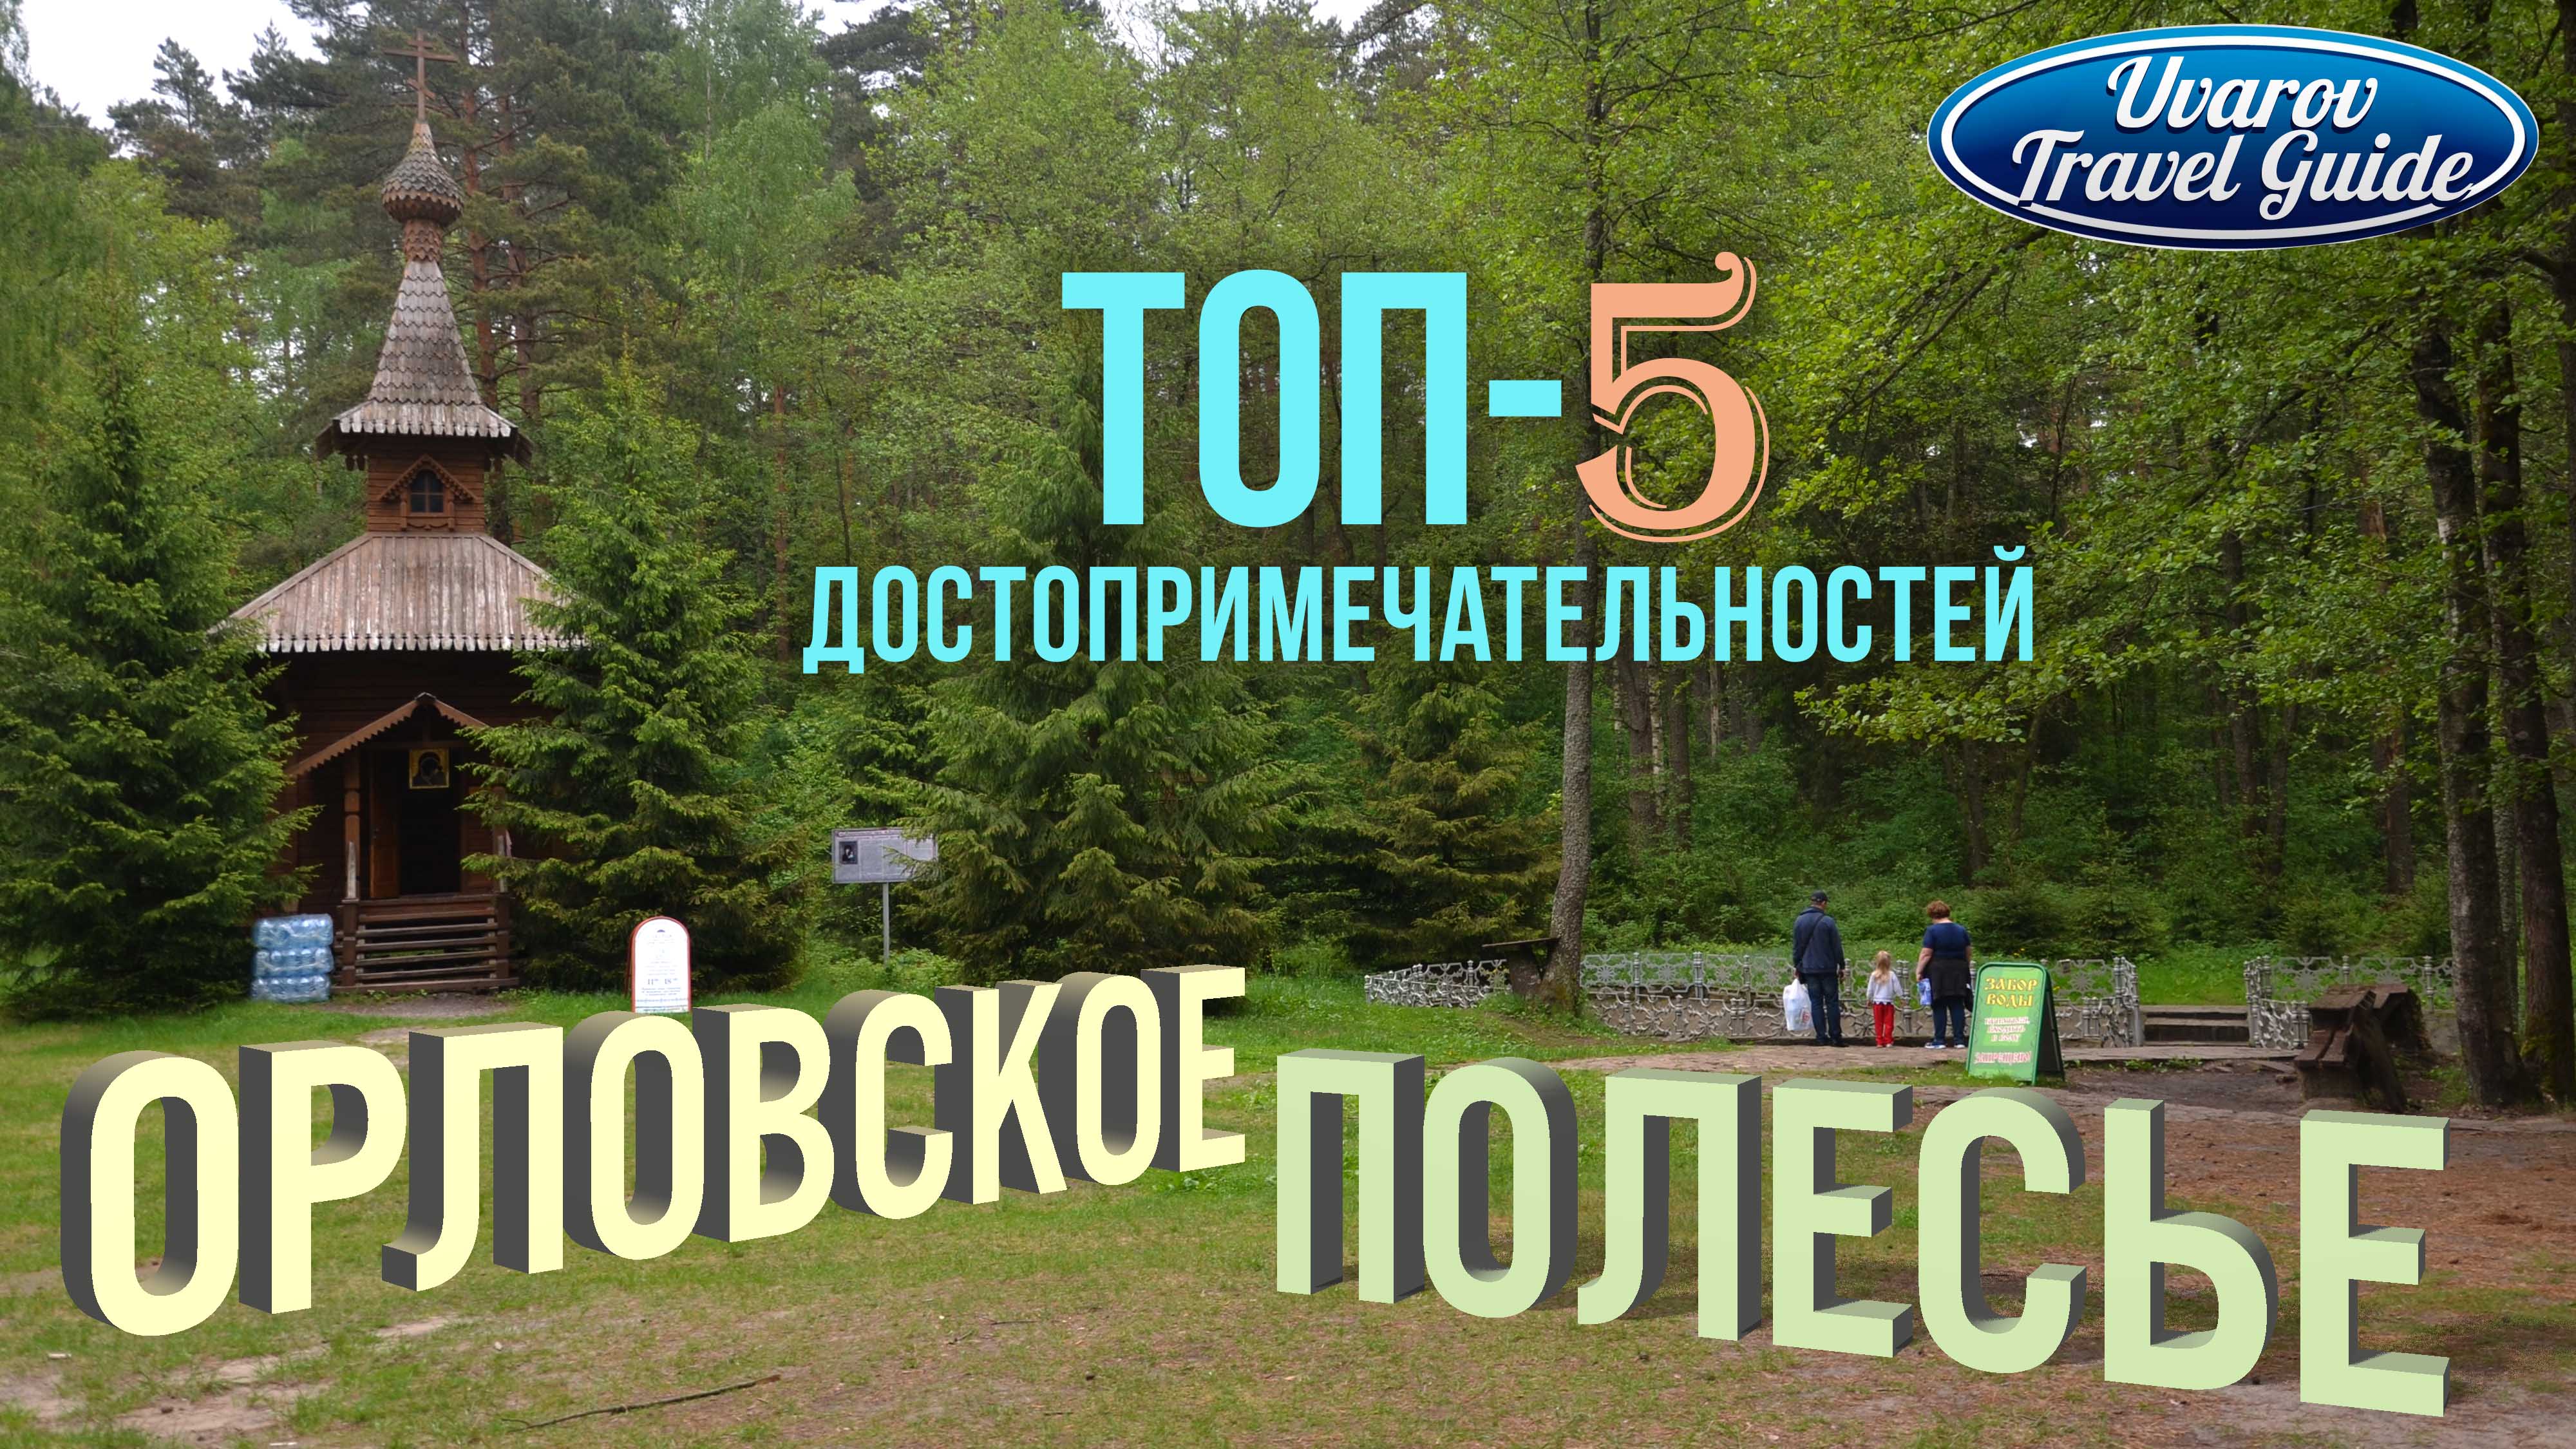 ОРЛОВСКОЕ ПОЛЕСЬЕ ТОП-5 достопримечательностей национального парка Орловская область